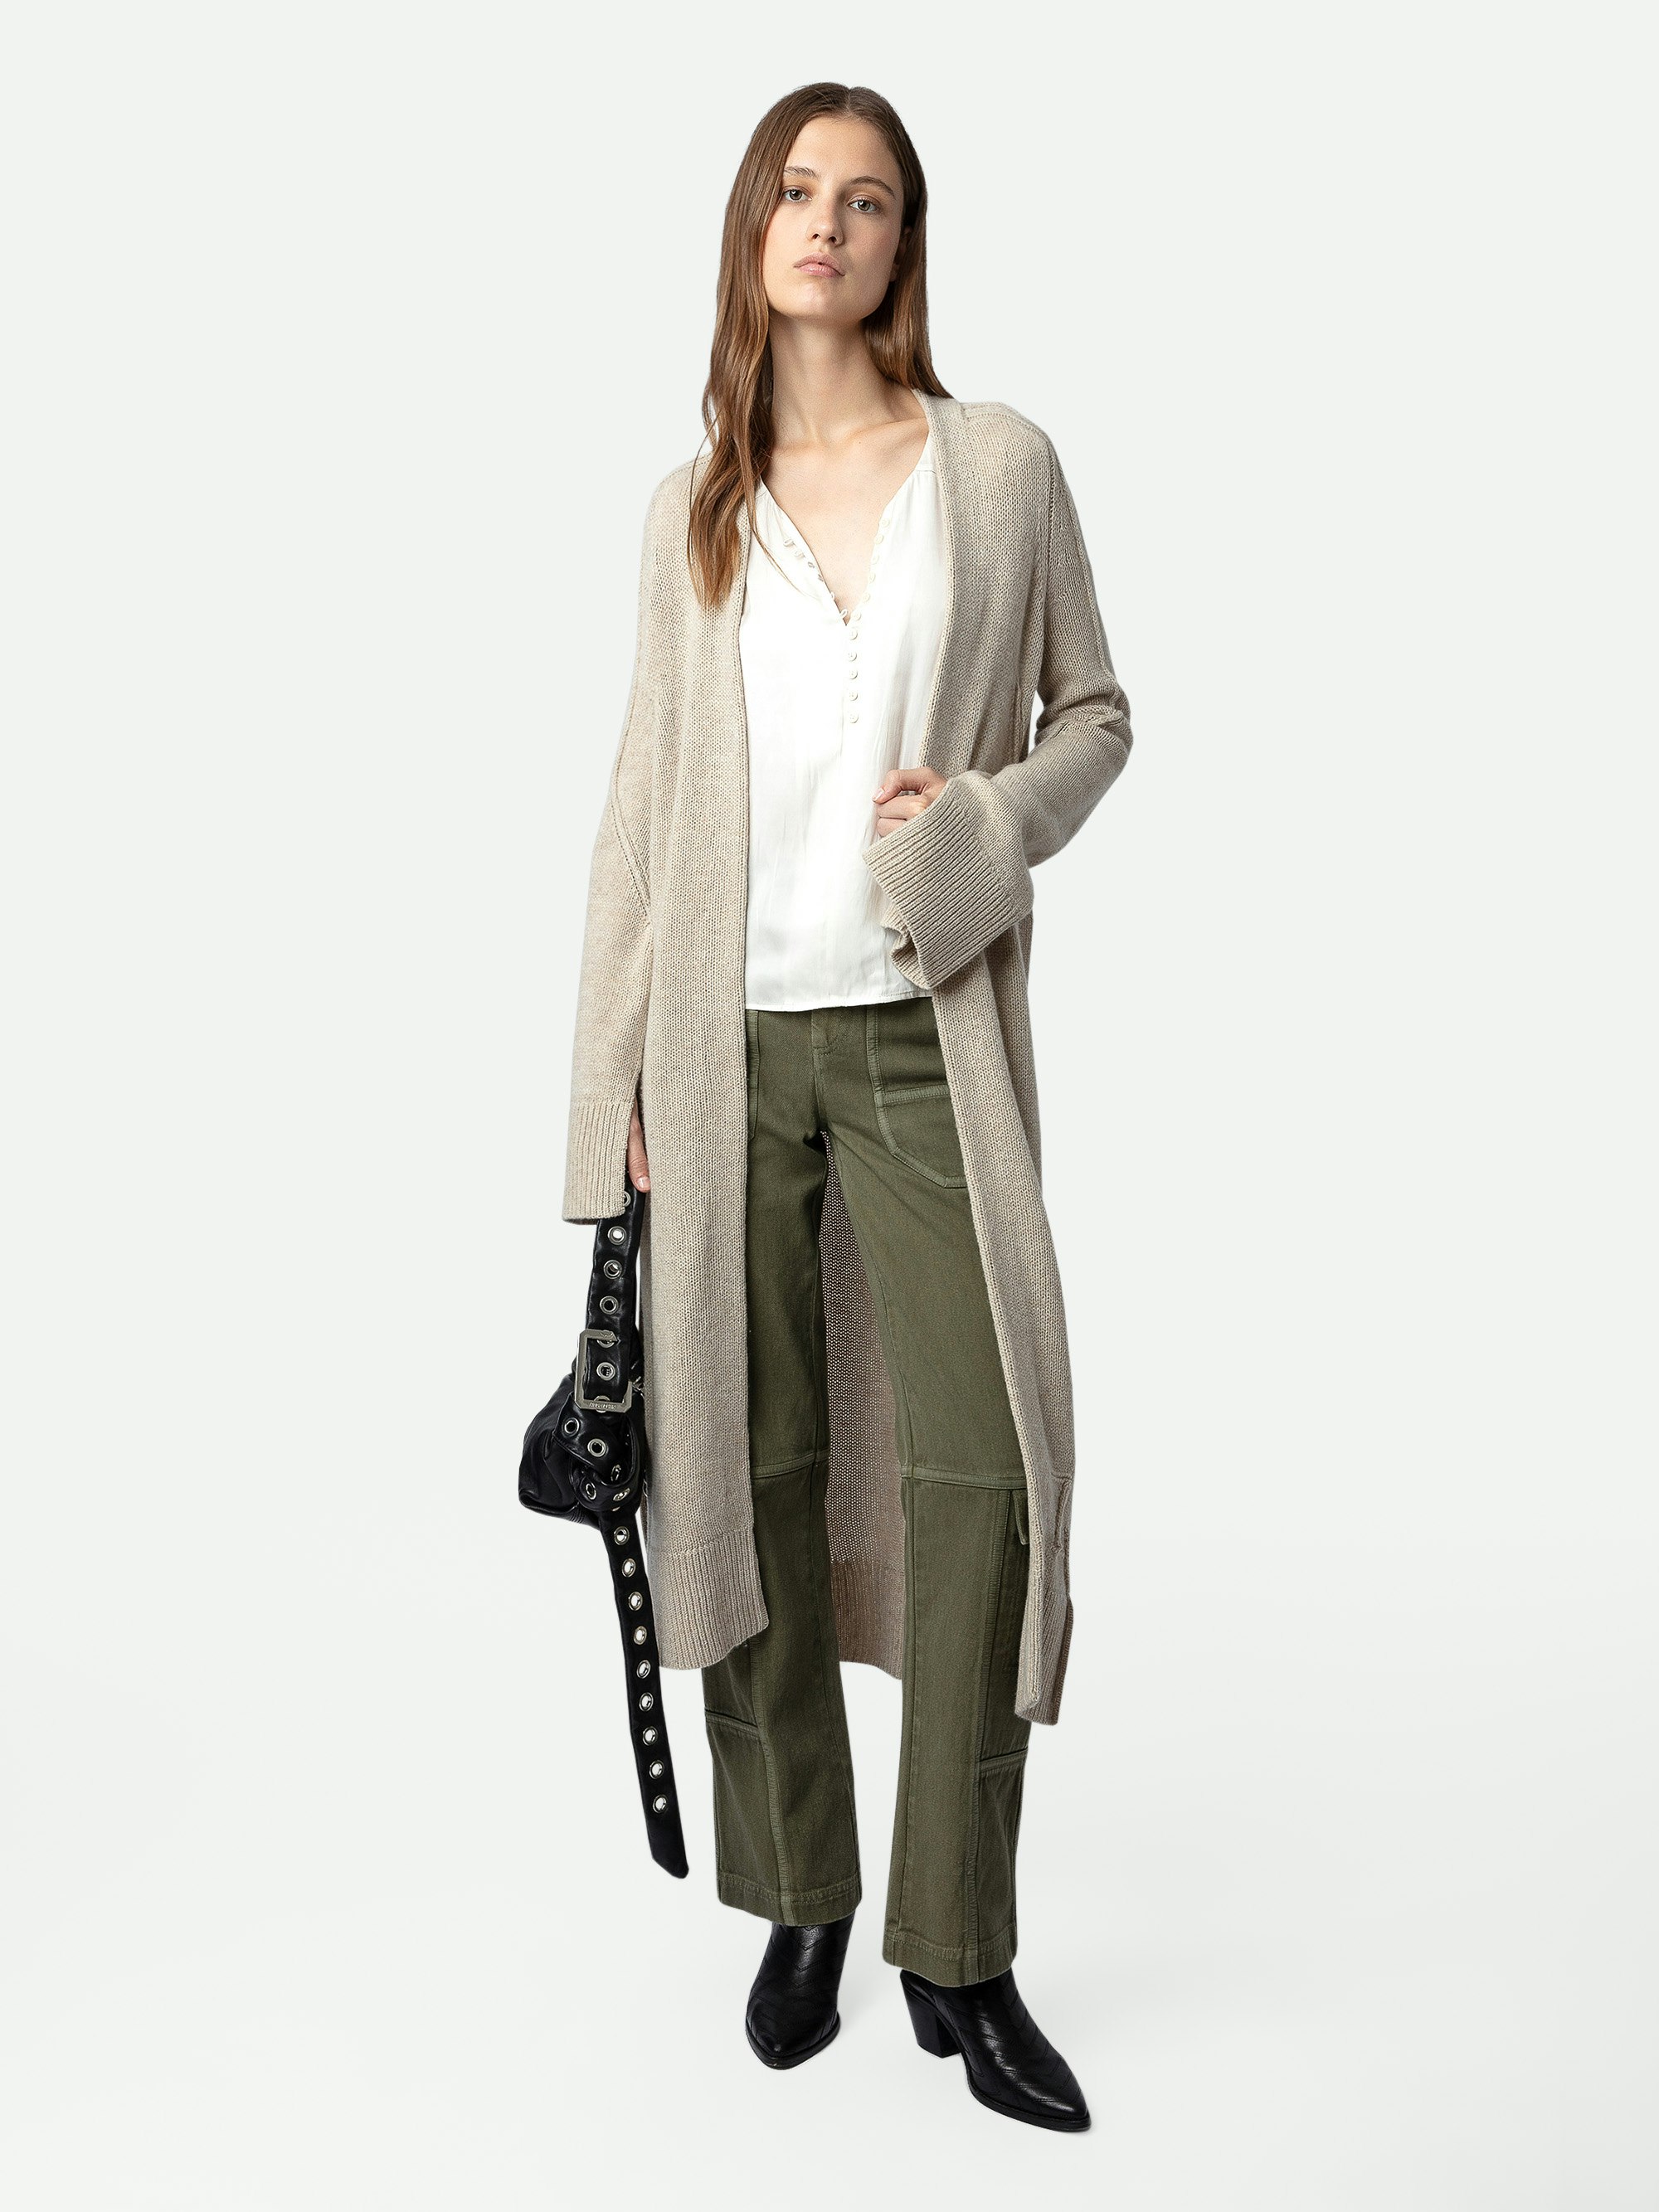 Gilet Salome - Gilet manteau long en maille écrue à manches longues, poignets fendus et ceinture amovible.